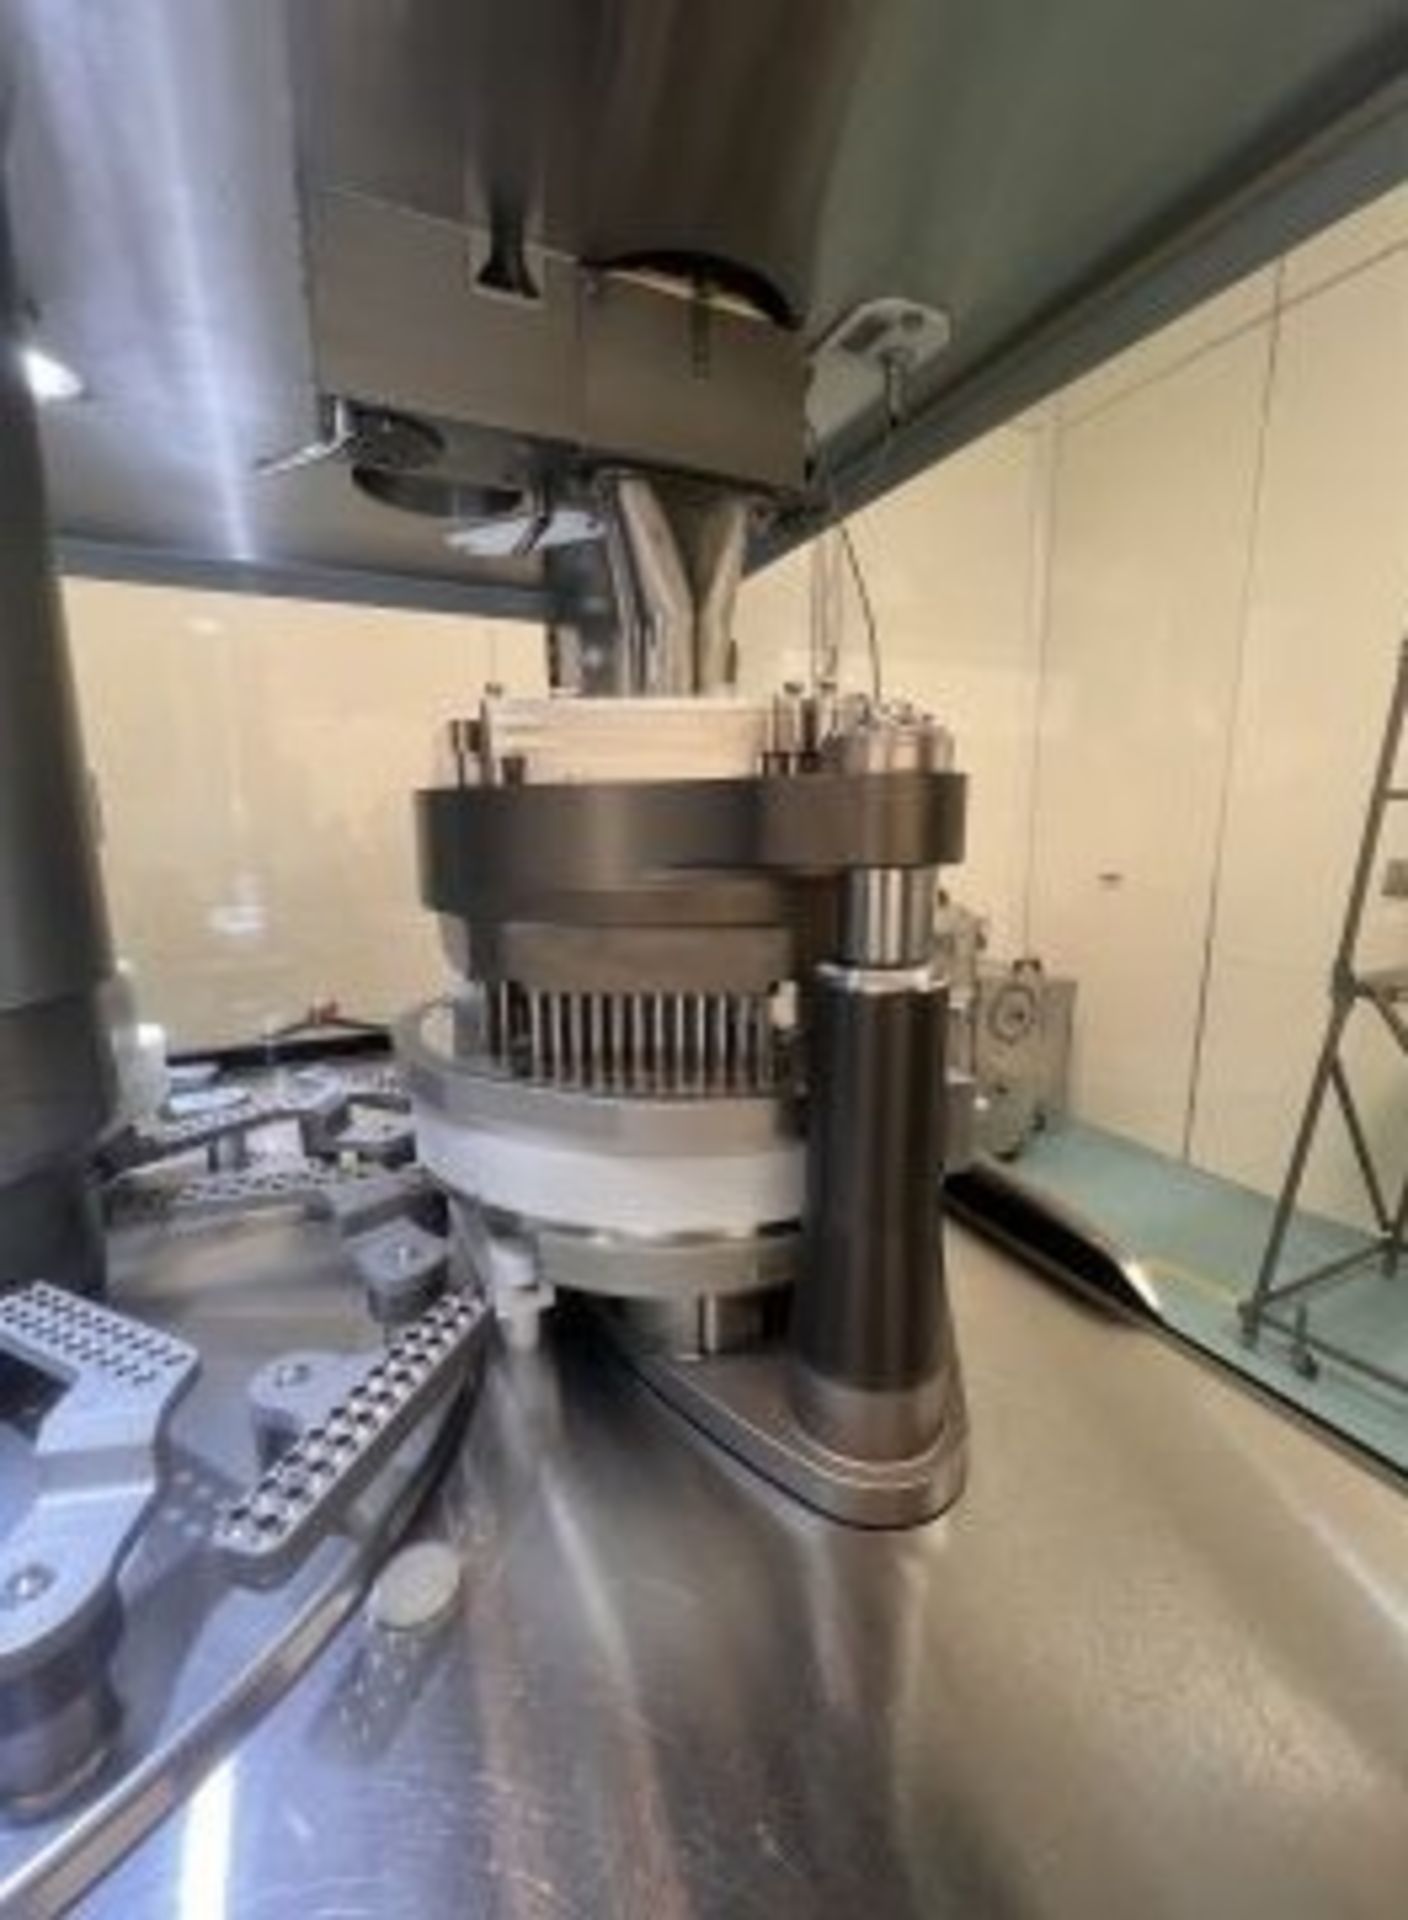 2019 Fette Compacting Capsule Filling Machine (Encapsulator), Model FE20, Machine Designation 9300- - Image 18 of 38